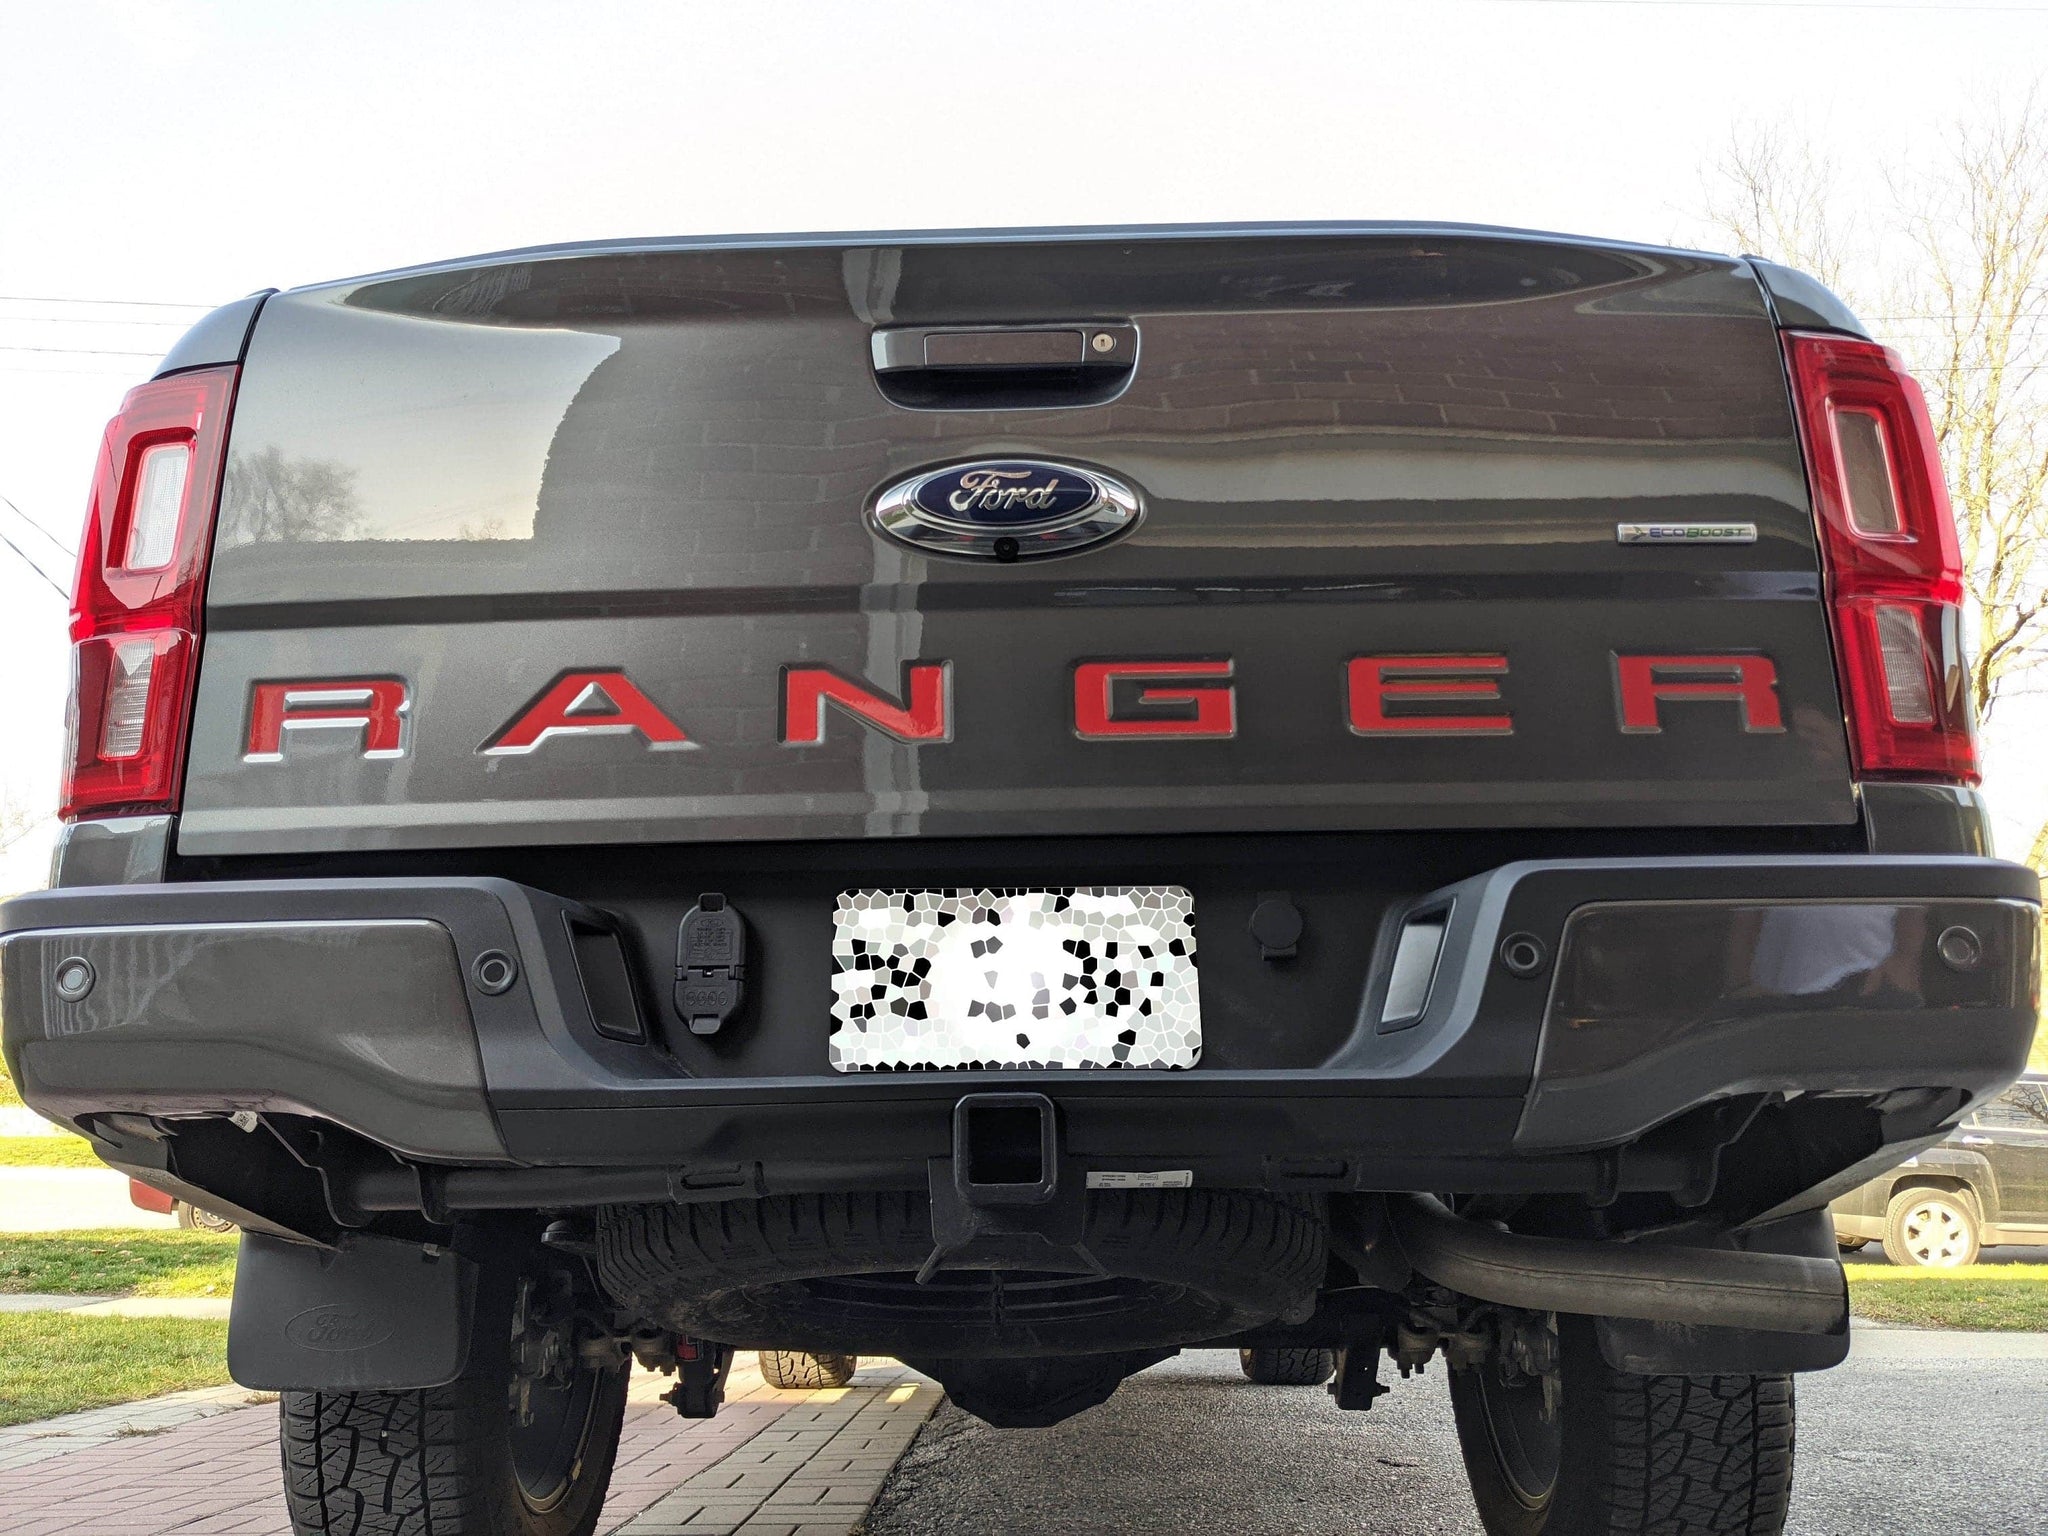 2019福特Ranger-后Ranger标志VinylMod覆盖层